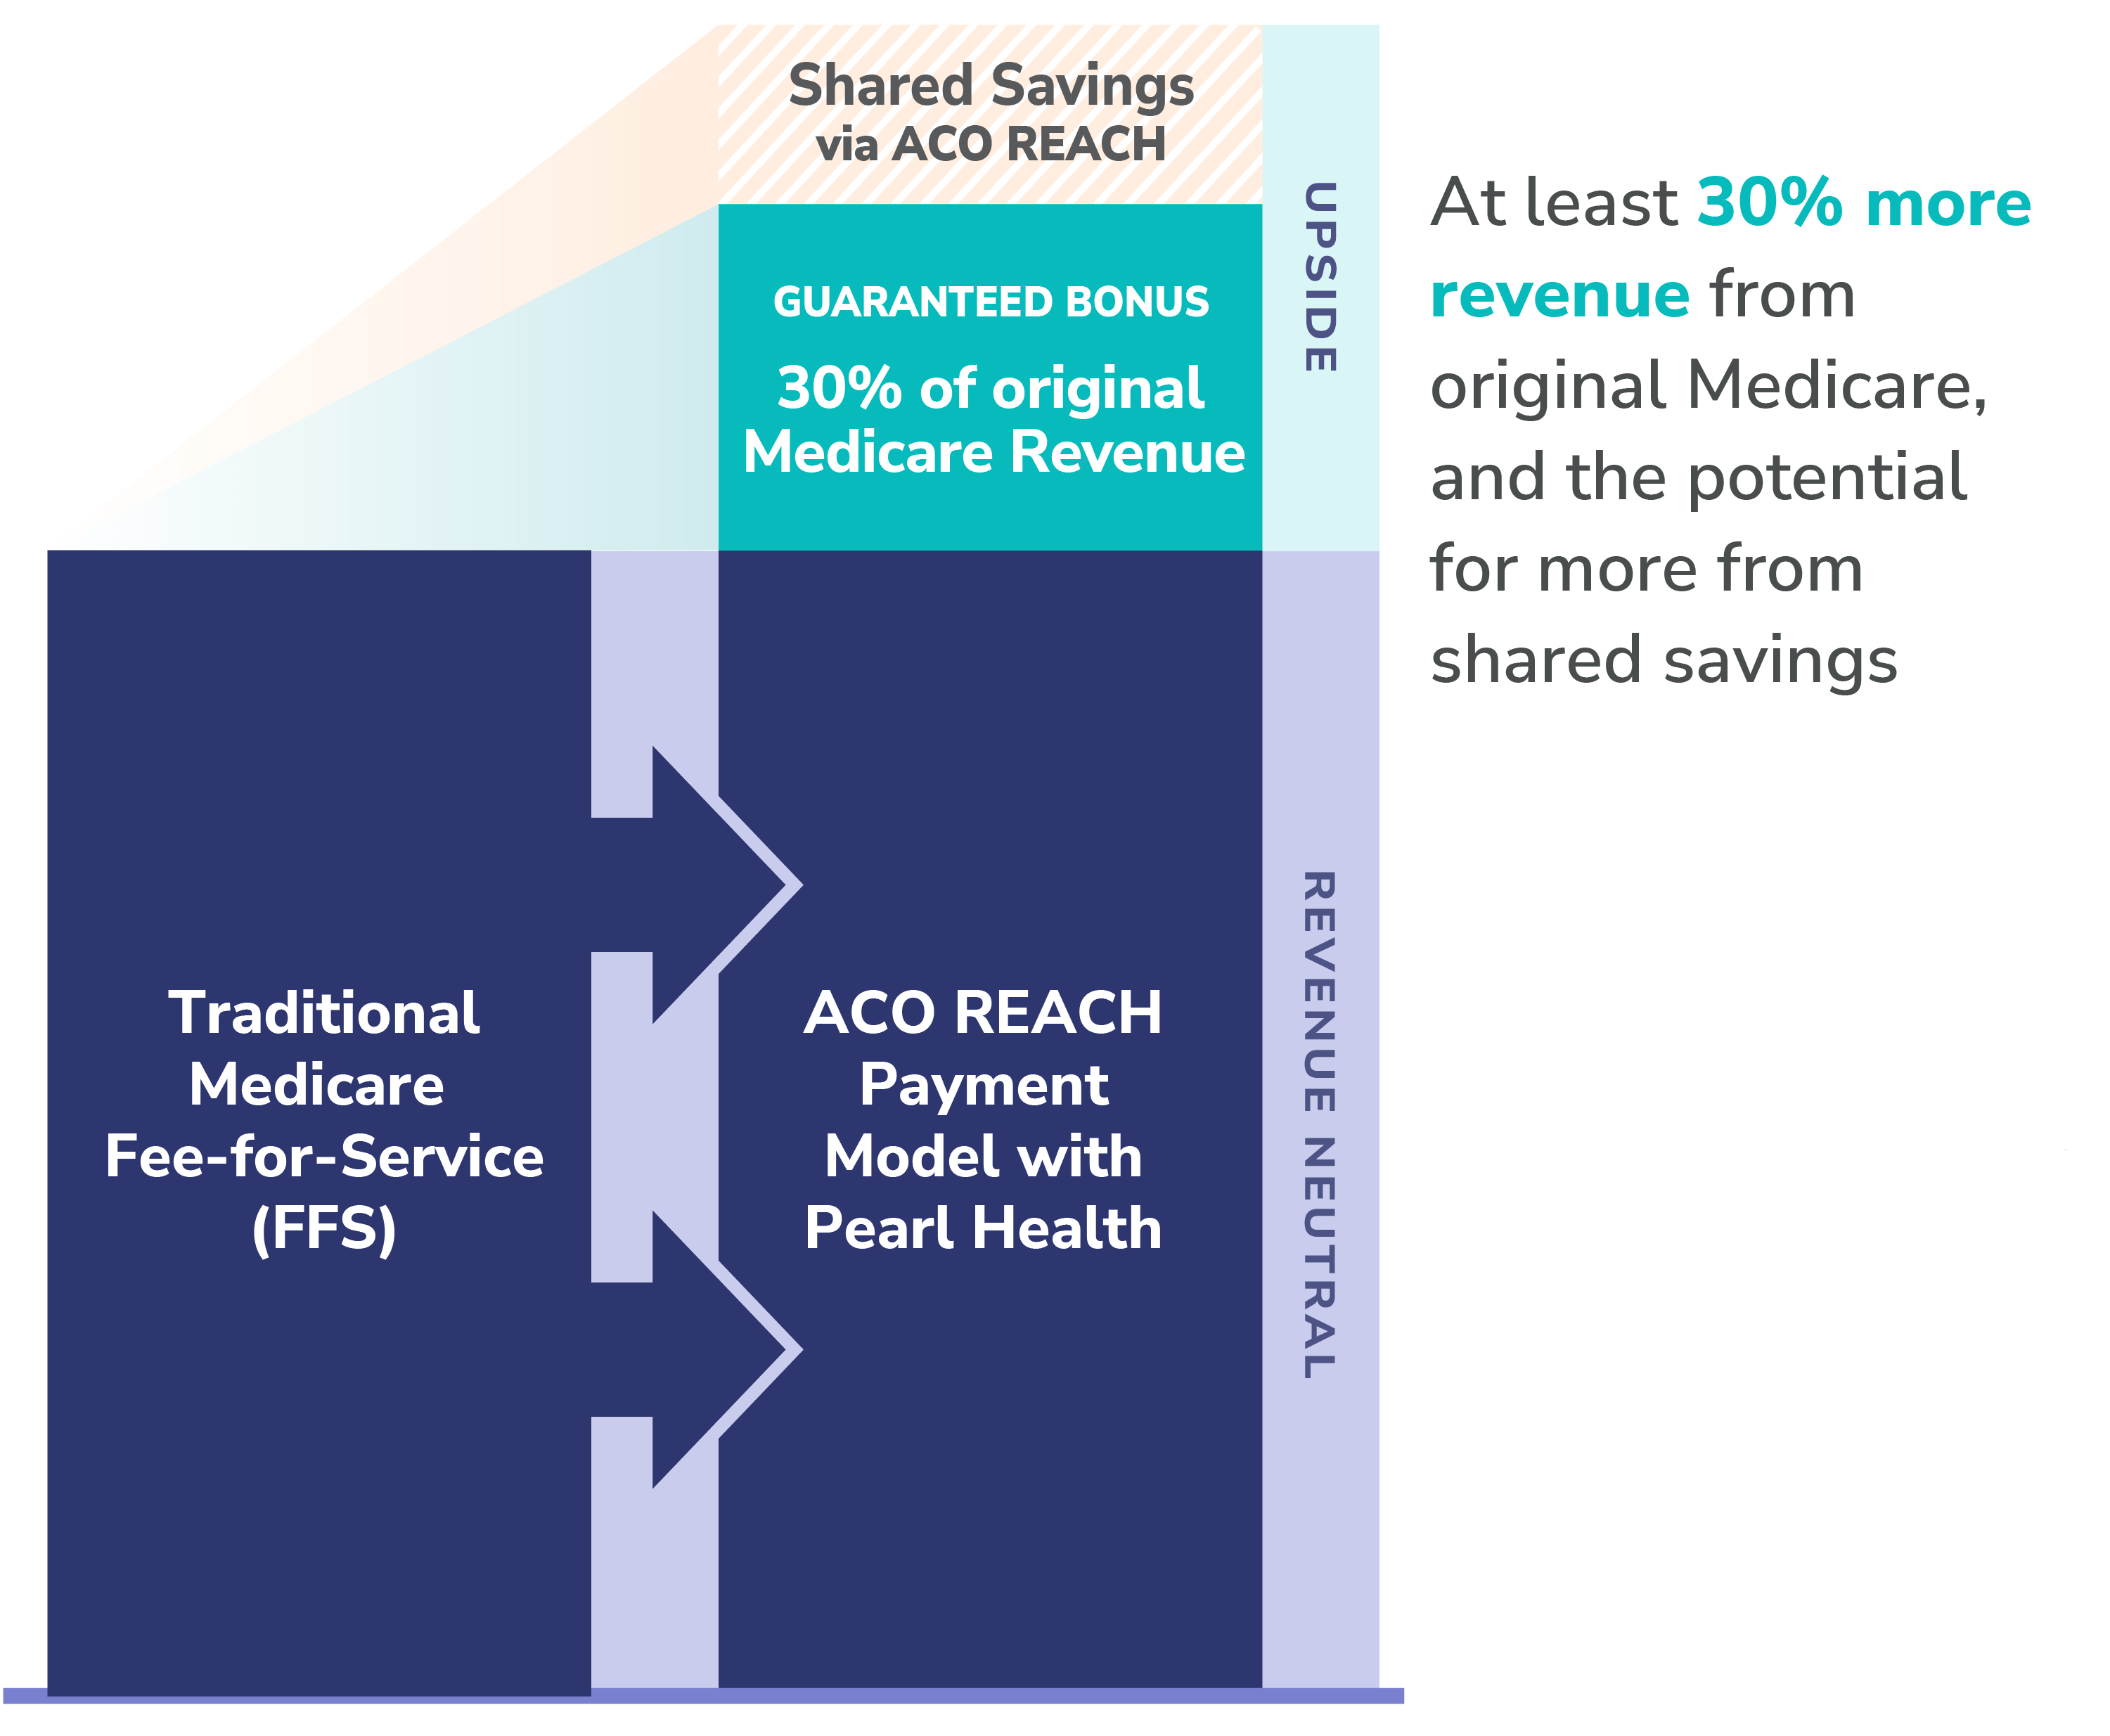 Pearl Health 30% More Revenue